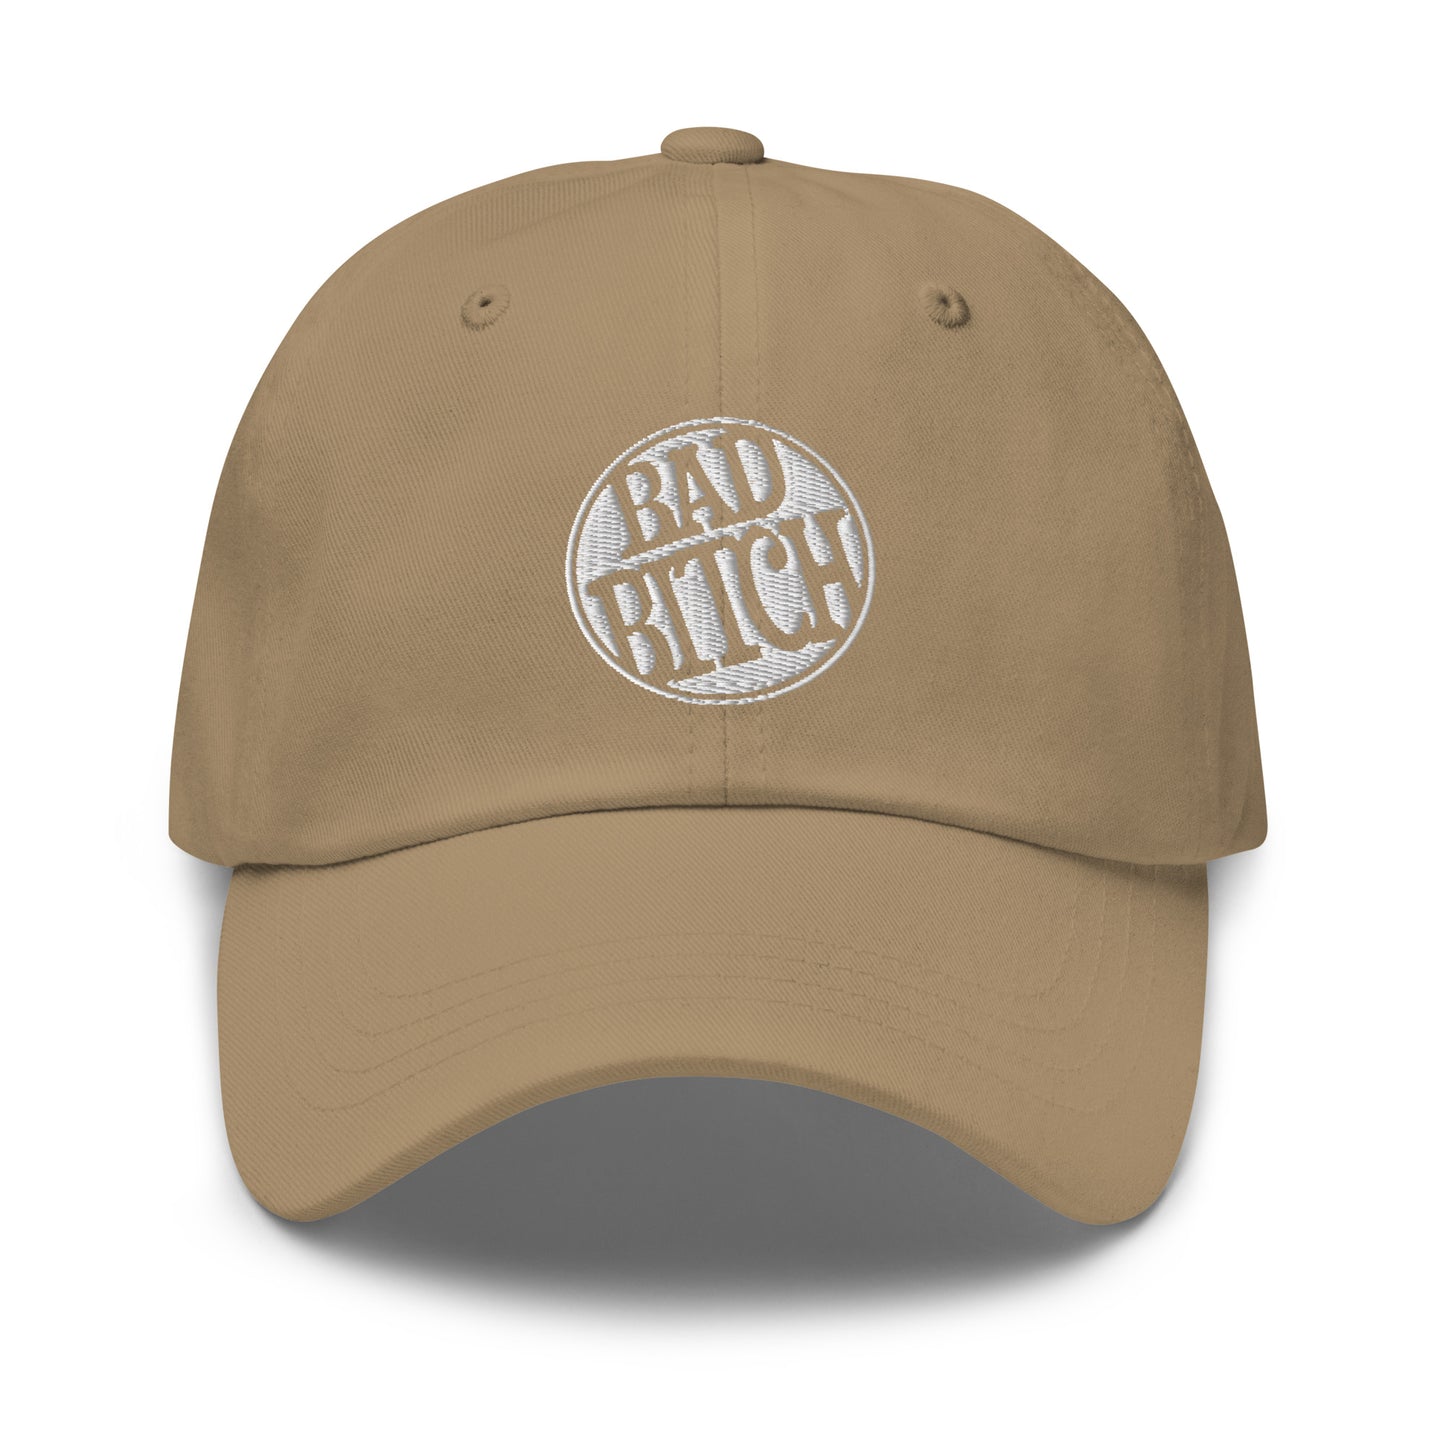 Bad Bitch - Dad hat